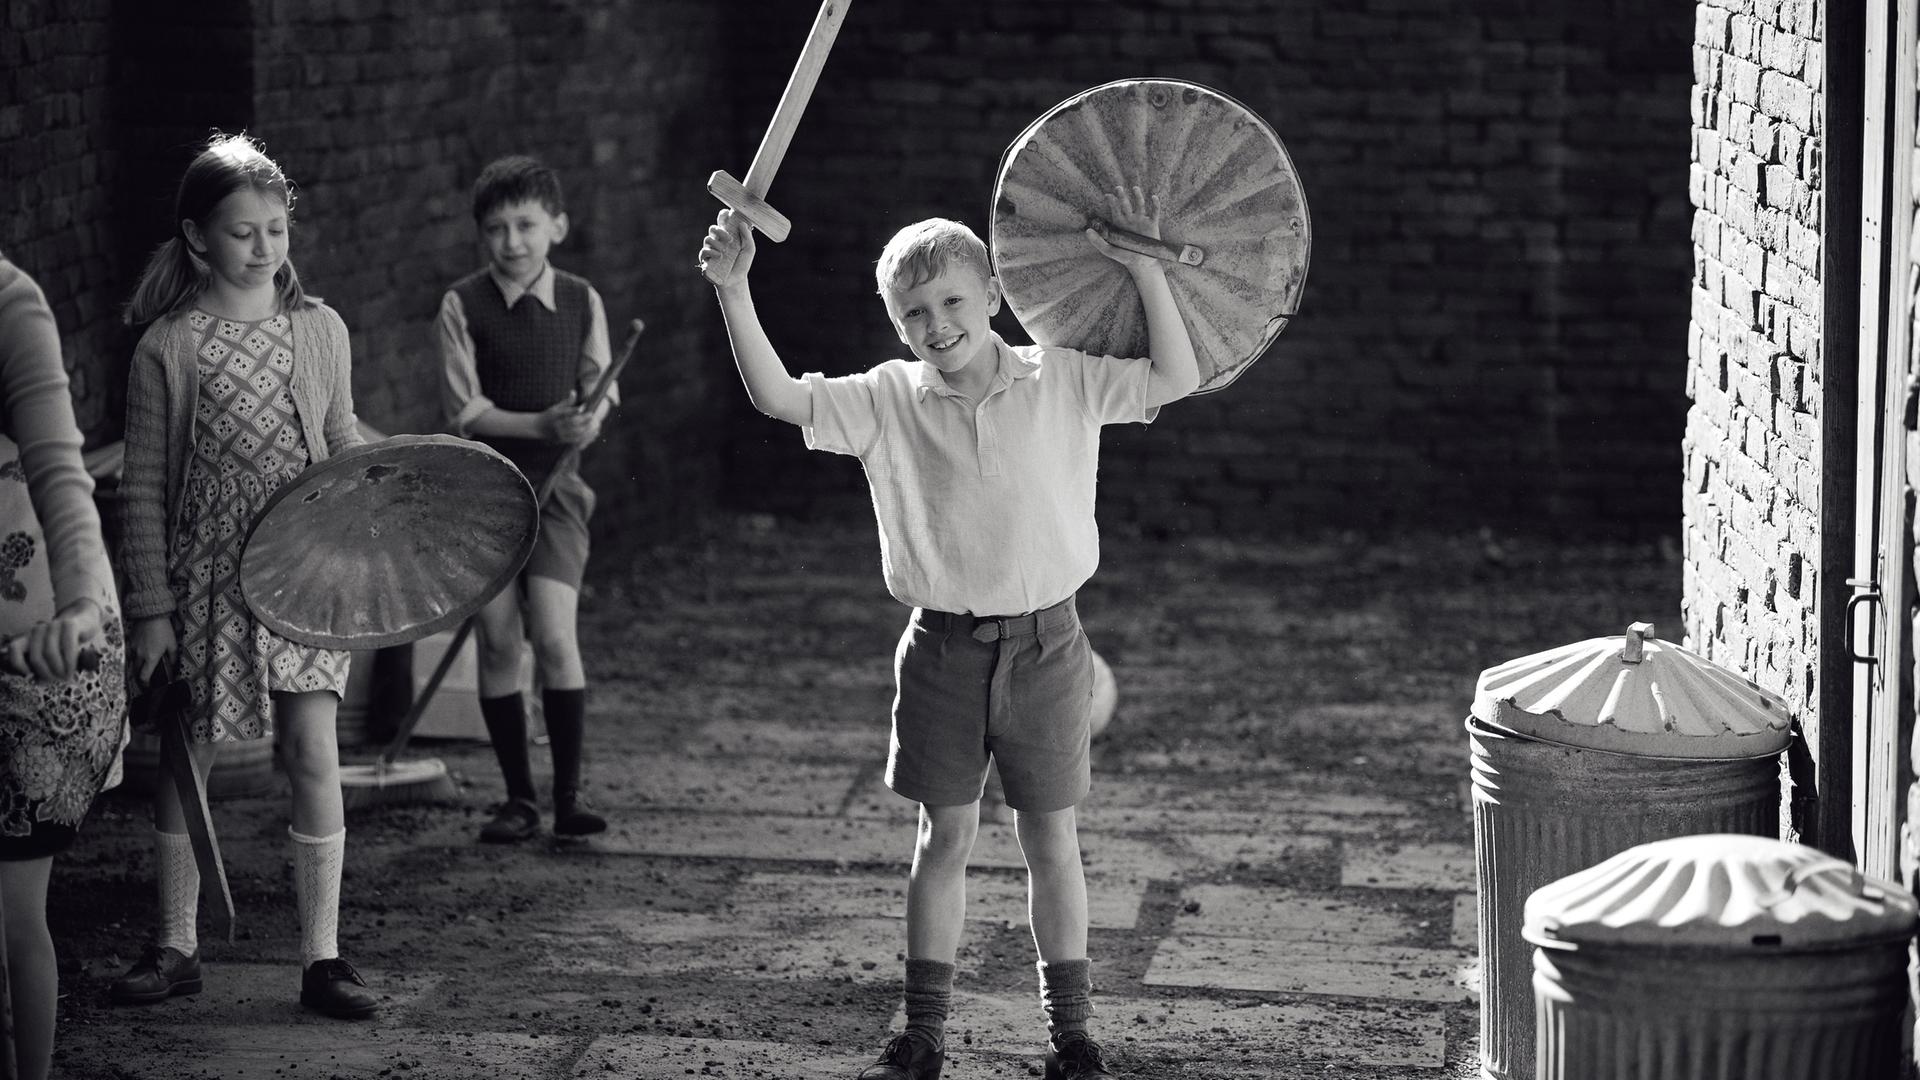 Im Still aus "Belfast" steht der kindliche Hauptdarsteller mit einem aus Holz gebastelten Schild und Schwert jubelnd auf einem Hof.